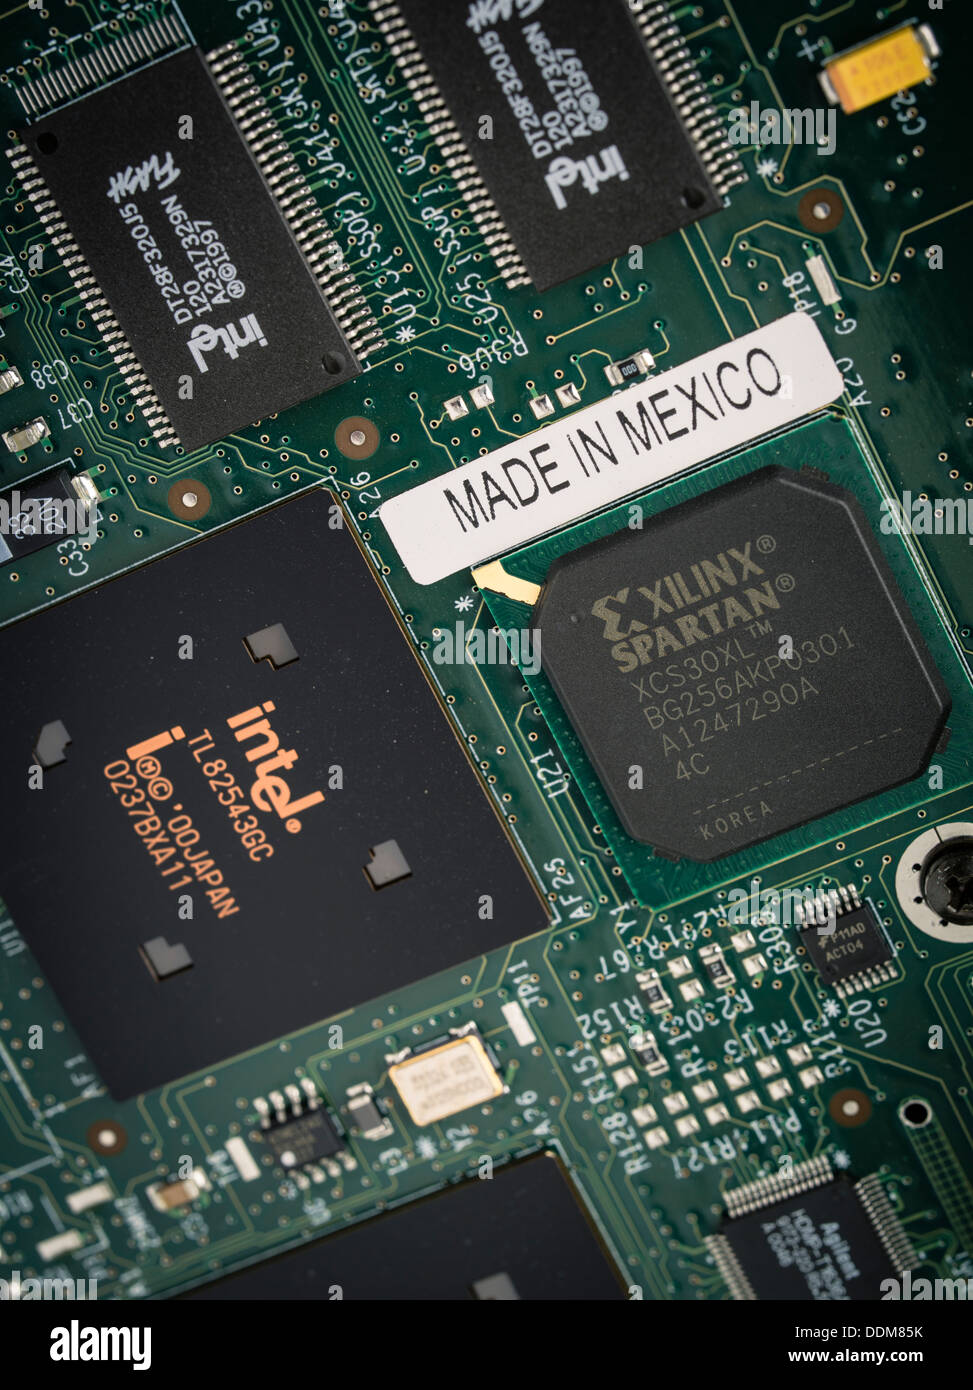 Realizzato in Messico , Intel microchip di memoria flash della scheda di circuito Foto Stock